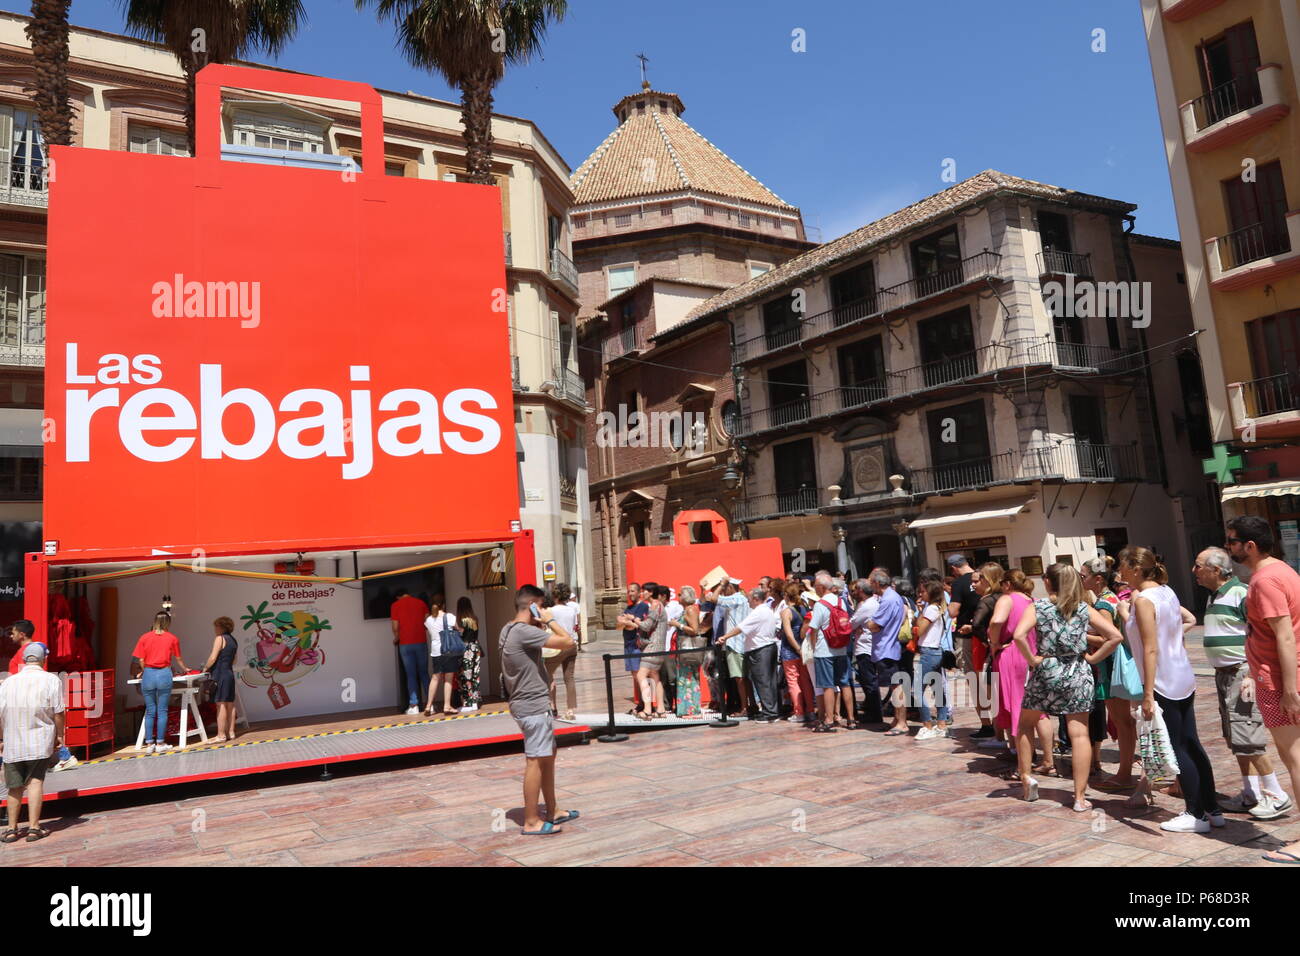 Junio 28, 2018 - Junio (Málaga) El Corte Ingles presenta su campaña de ventas de verano en Málaga.La compañía ha elegido la ciudad de Málaga para presentar esta campaña de rebajas